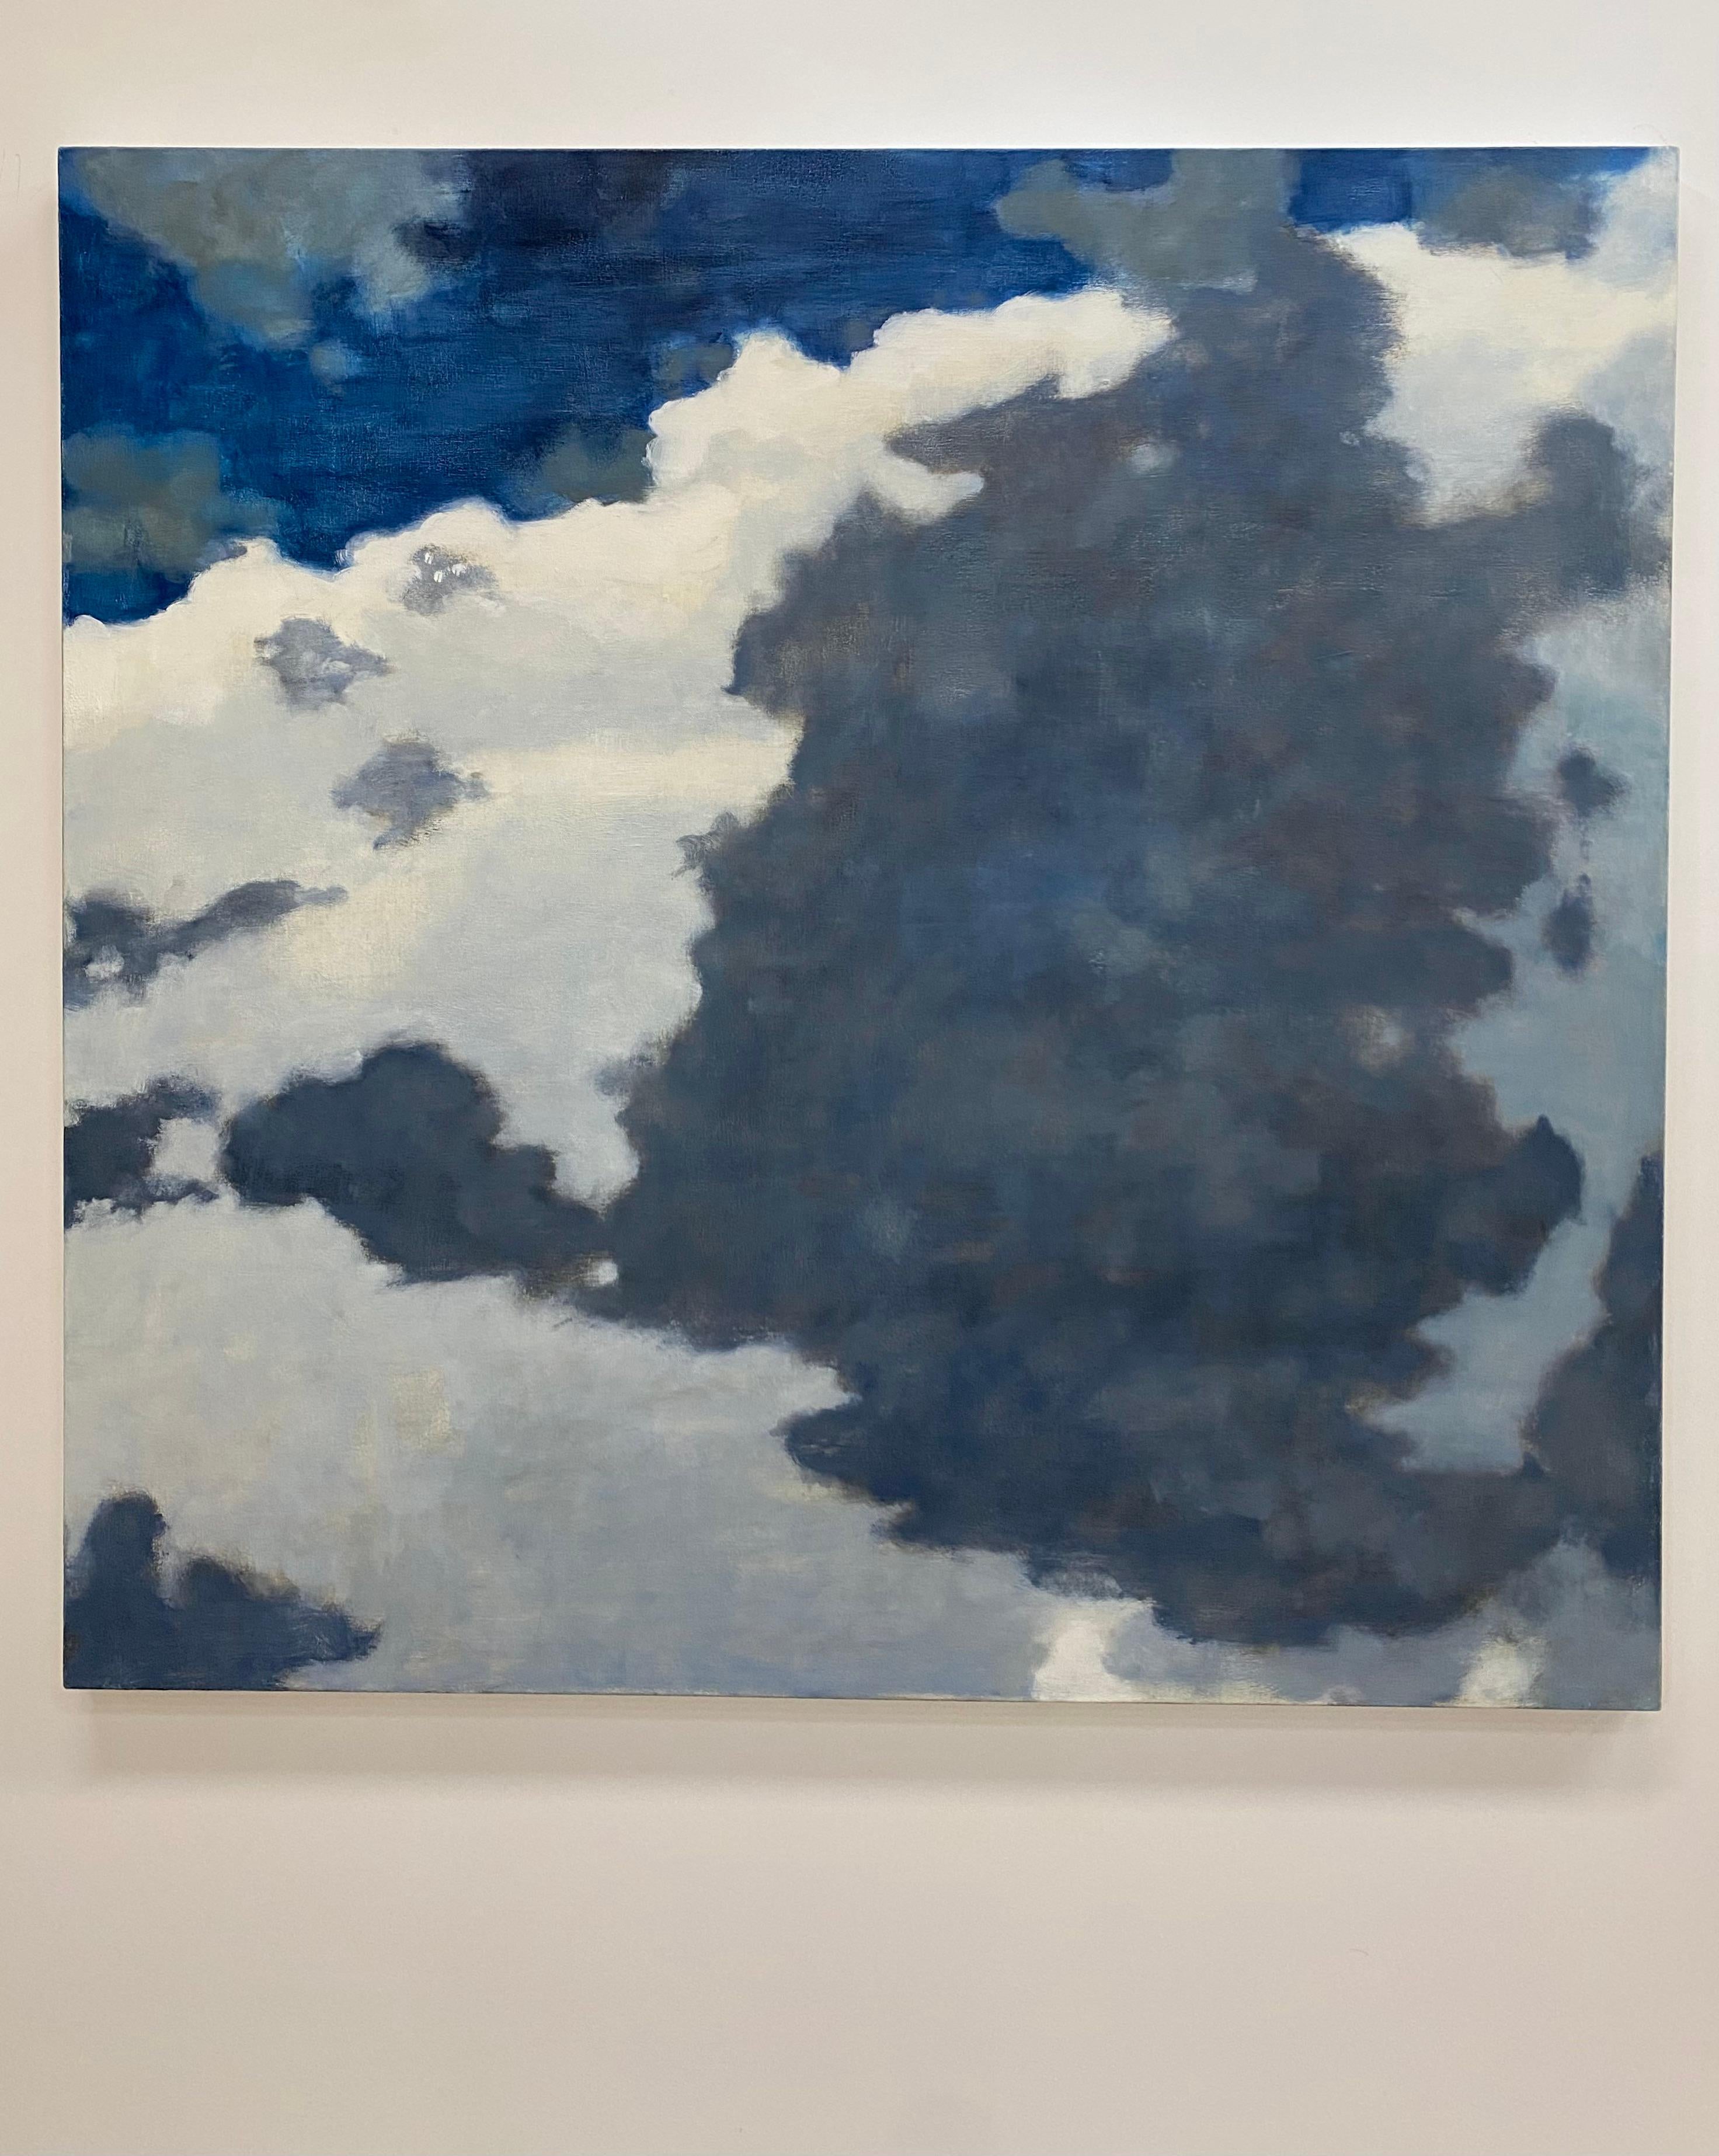 De A Window Seat One, nuages ivoire crème, ciel bleu cobalt, paysage - Painting de David Konigsberg